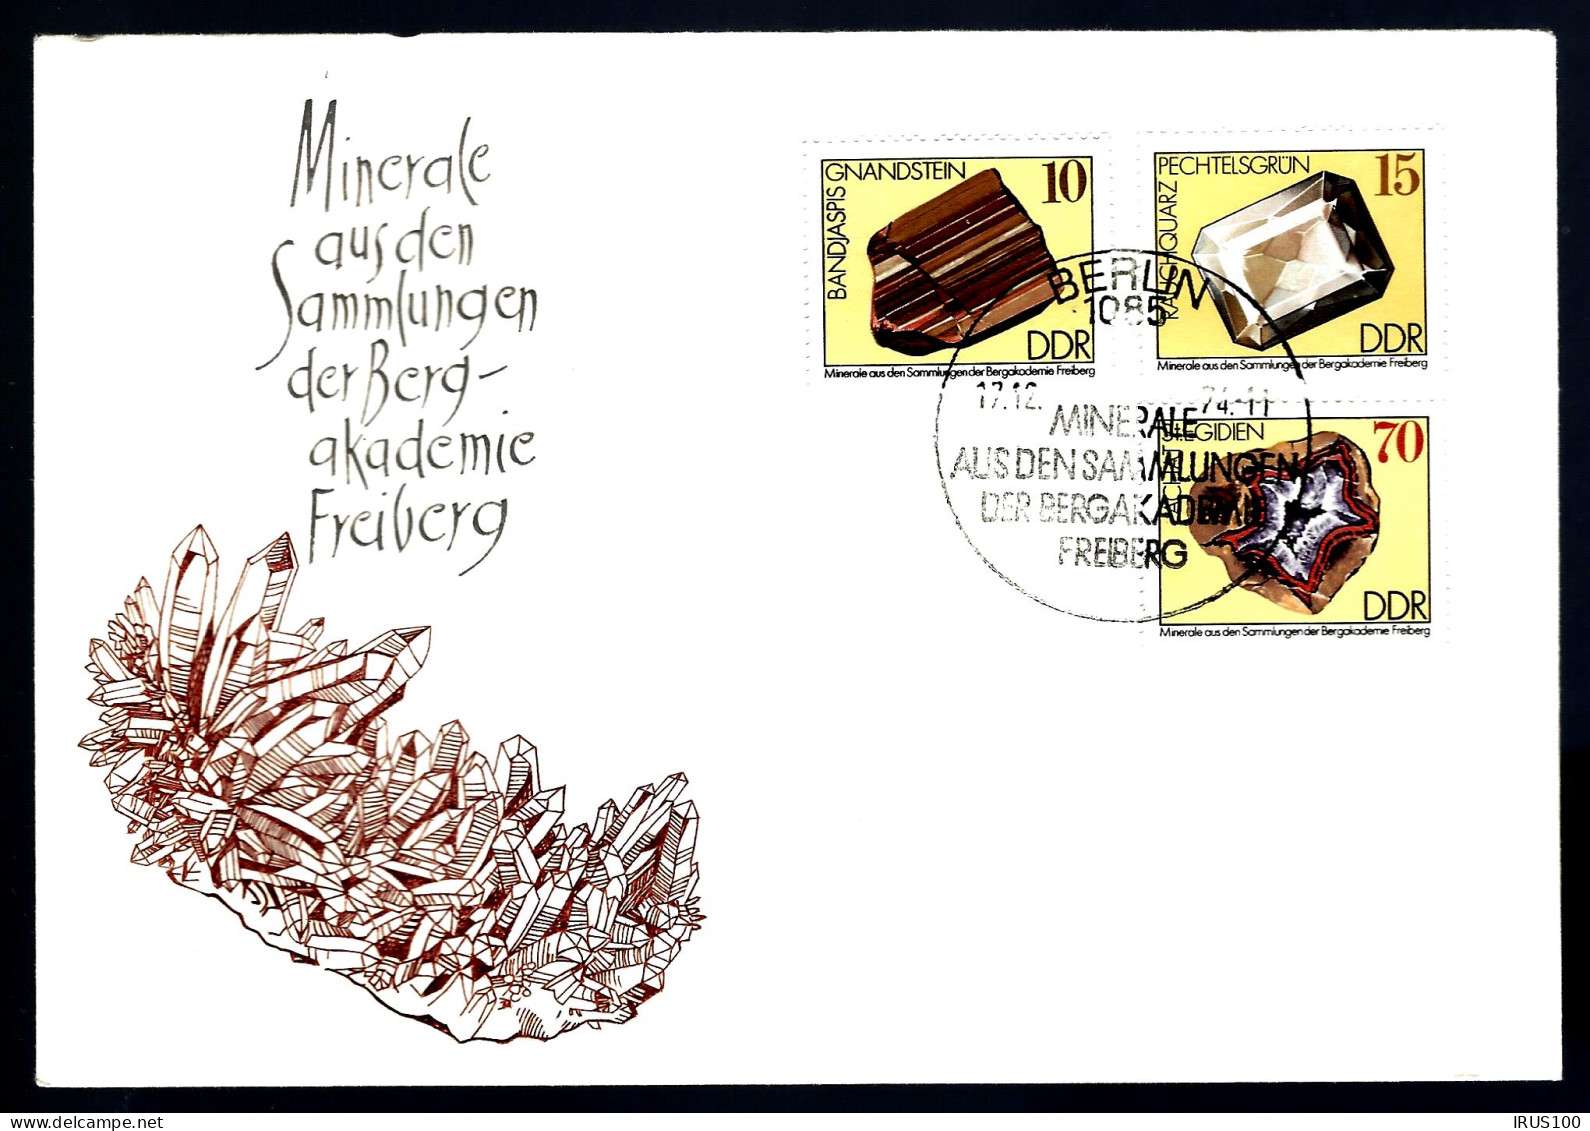 MINÉRAUX - COLLECTION DE LA BERG-AKADEMIE - FRIBOURG - 2 ENVELOPPES - Mineralien